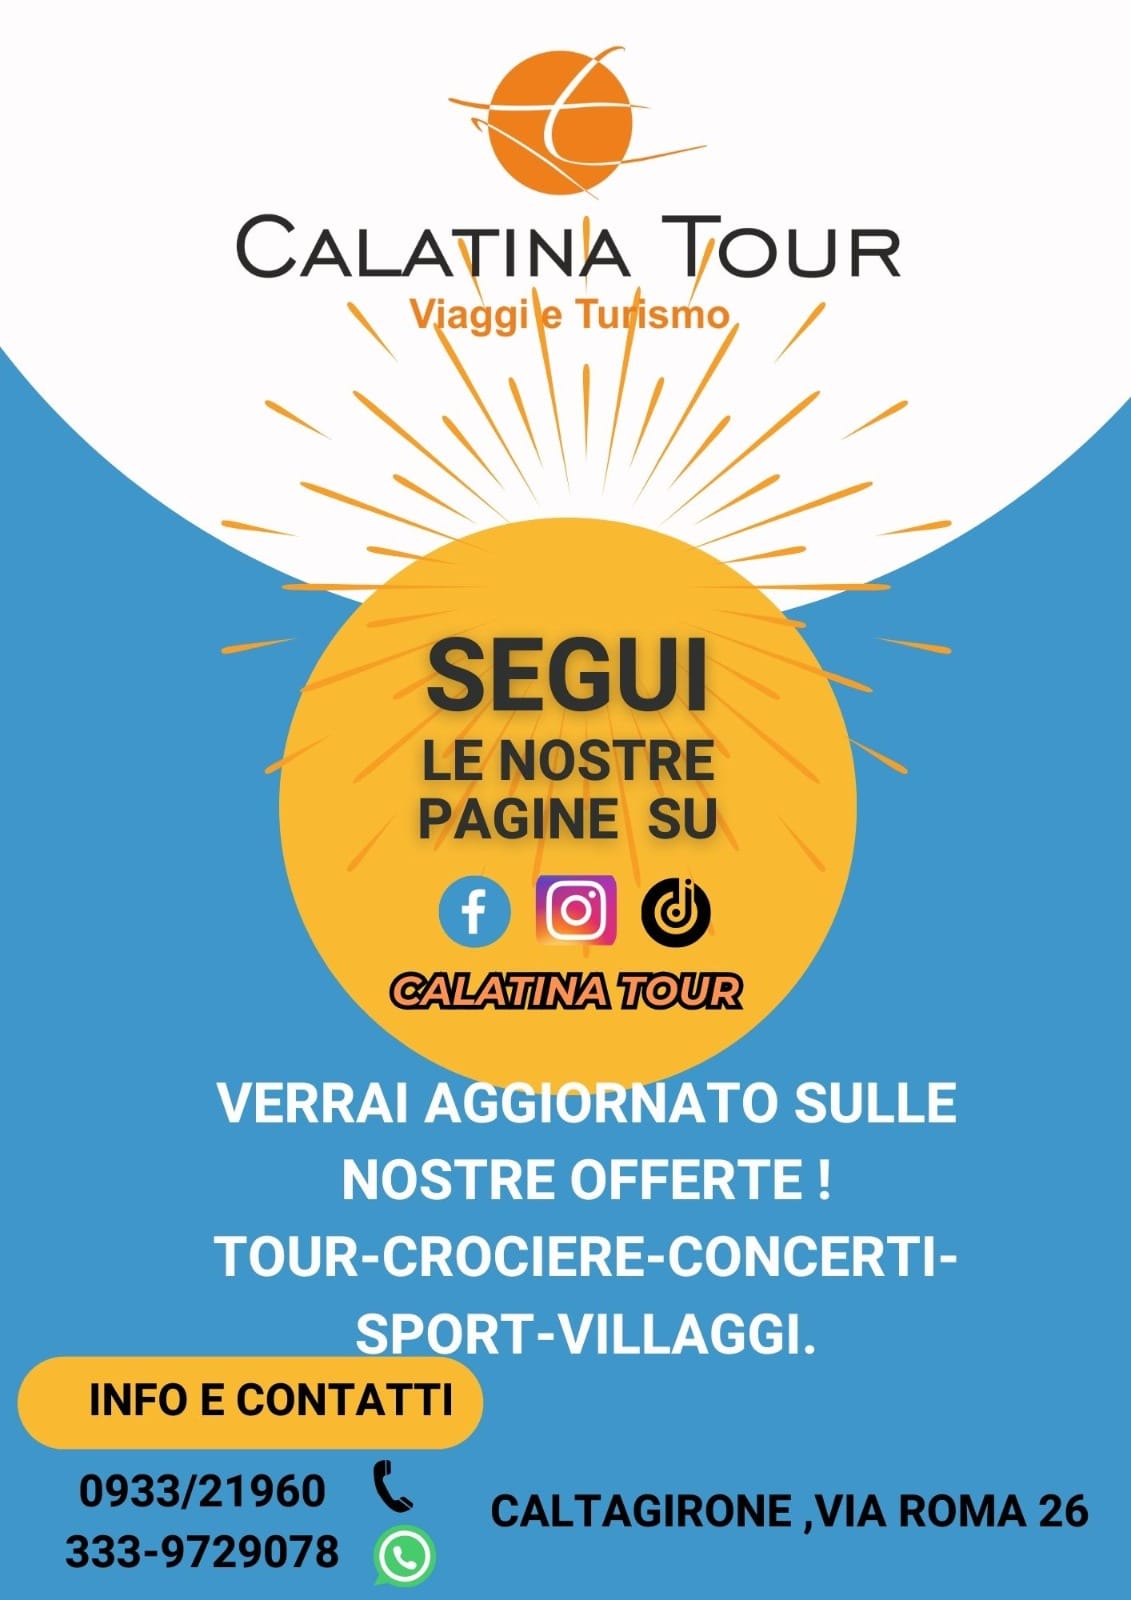 calatina-tour SANT'AGATA CALTAGIRONE INVITA ALLA DEVOZIONE MARINA: ANDIAMO A MARIA DI LOURDES.